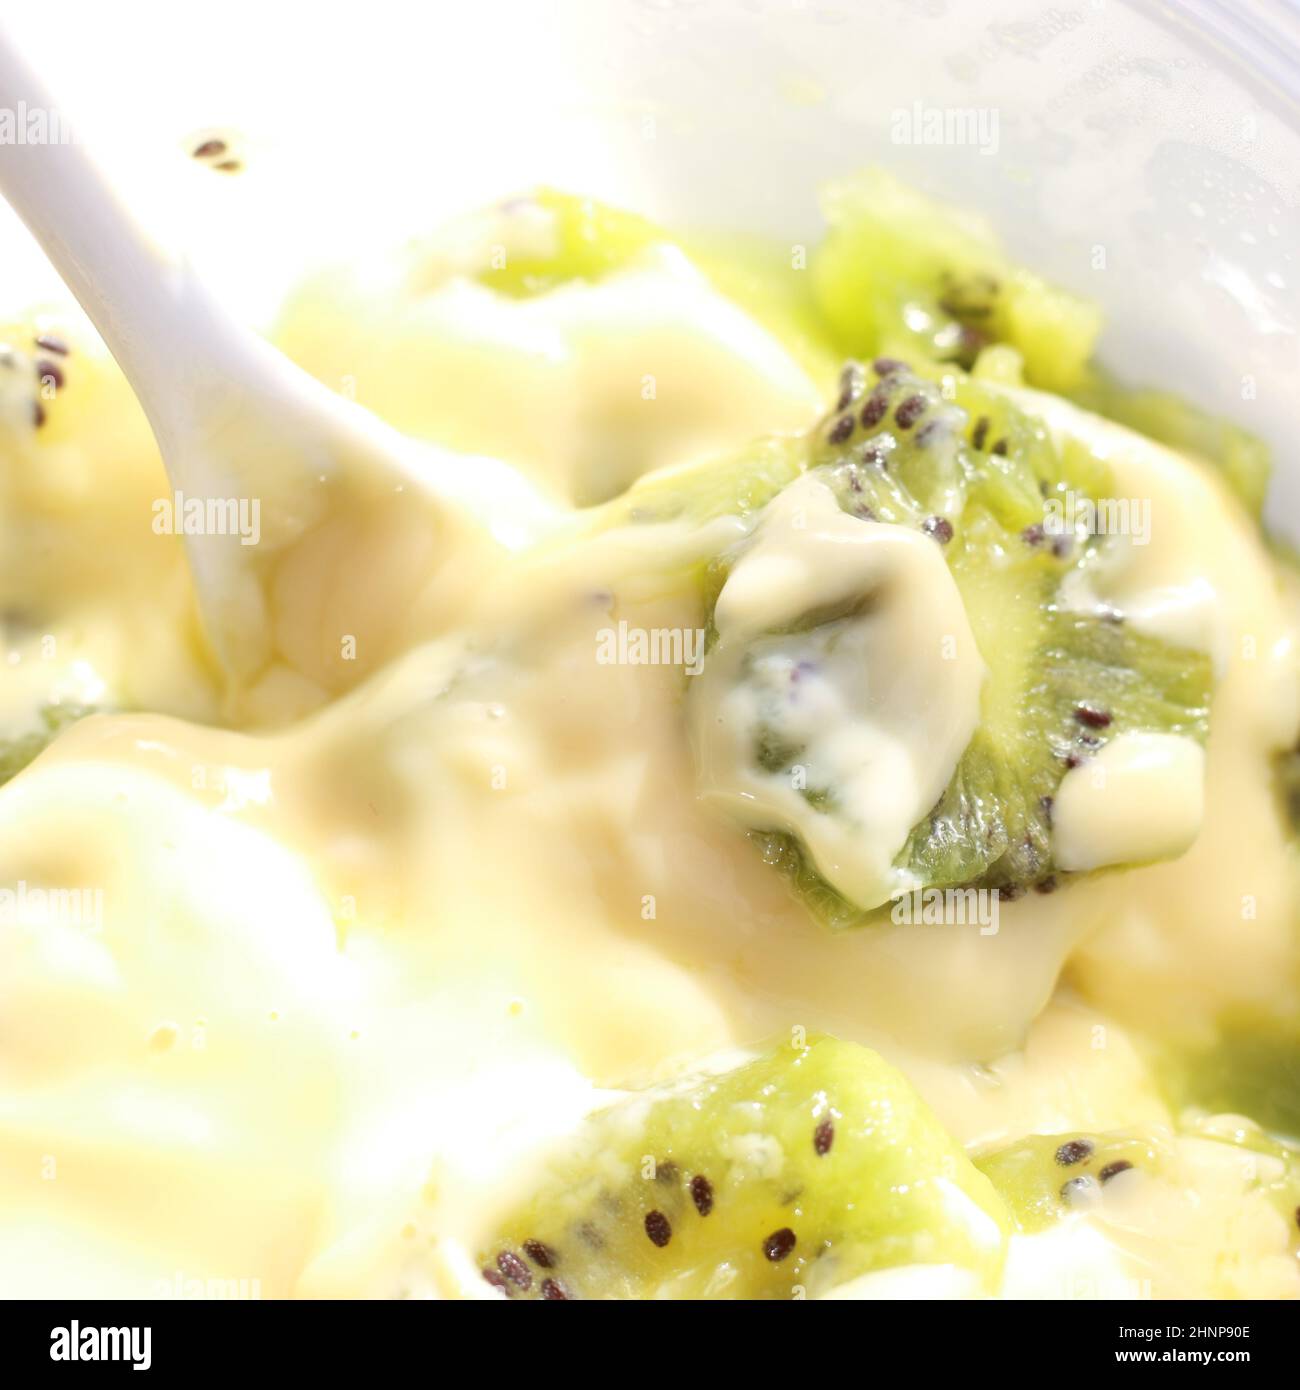 Food and Drink Concept – Nahaufnahme von geschnittenem Kiwi-Obst und cremigem Custard-Dessert Stockfoto